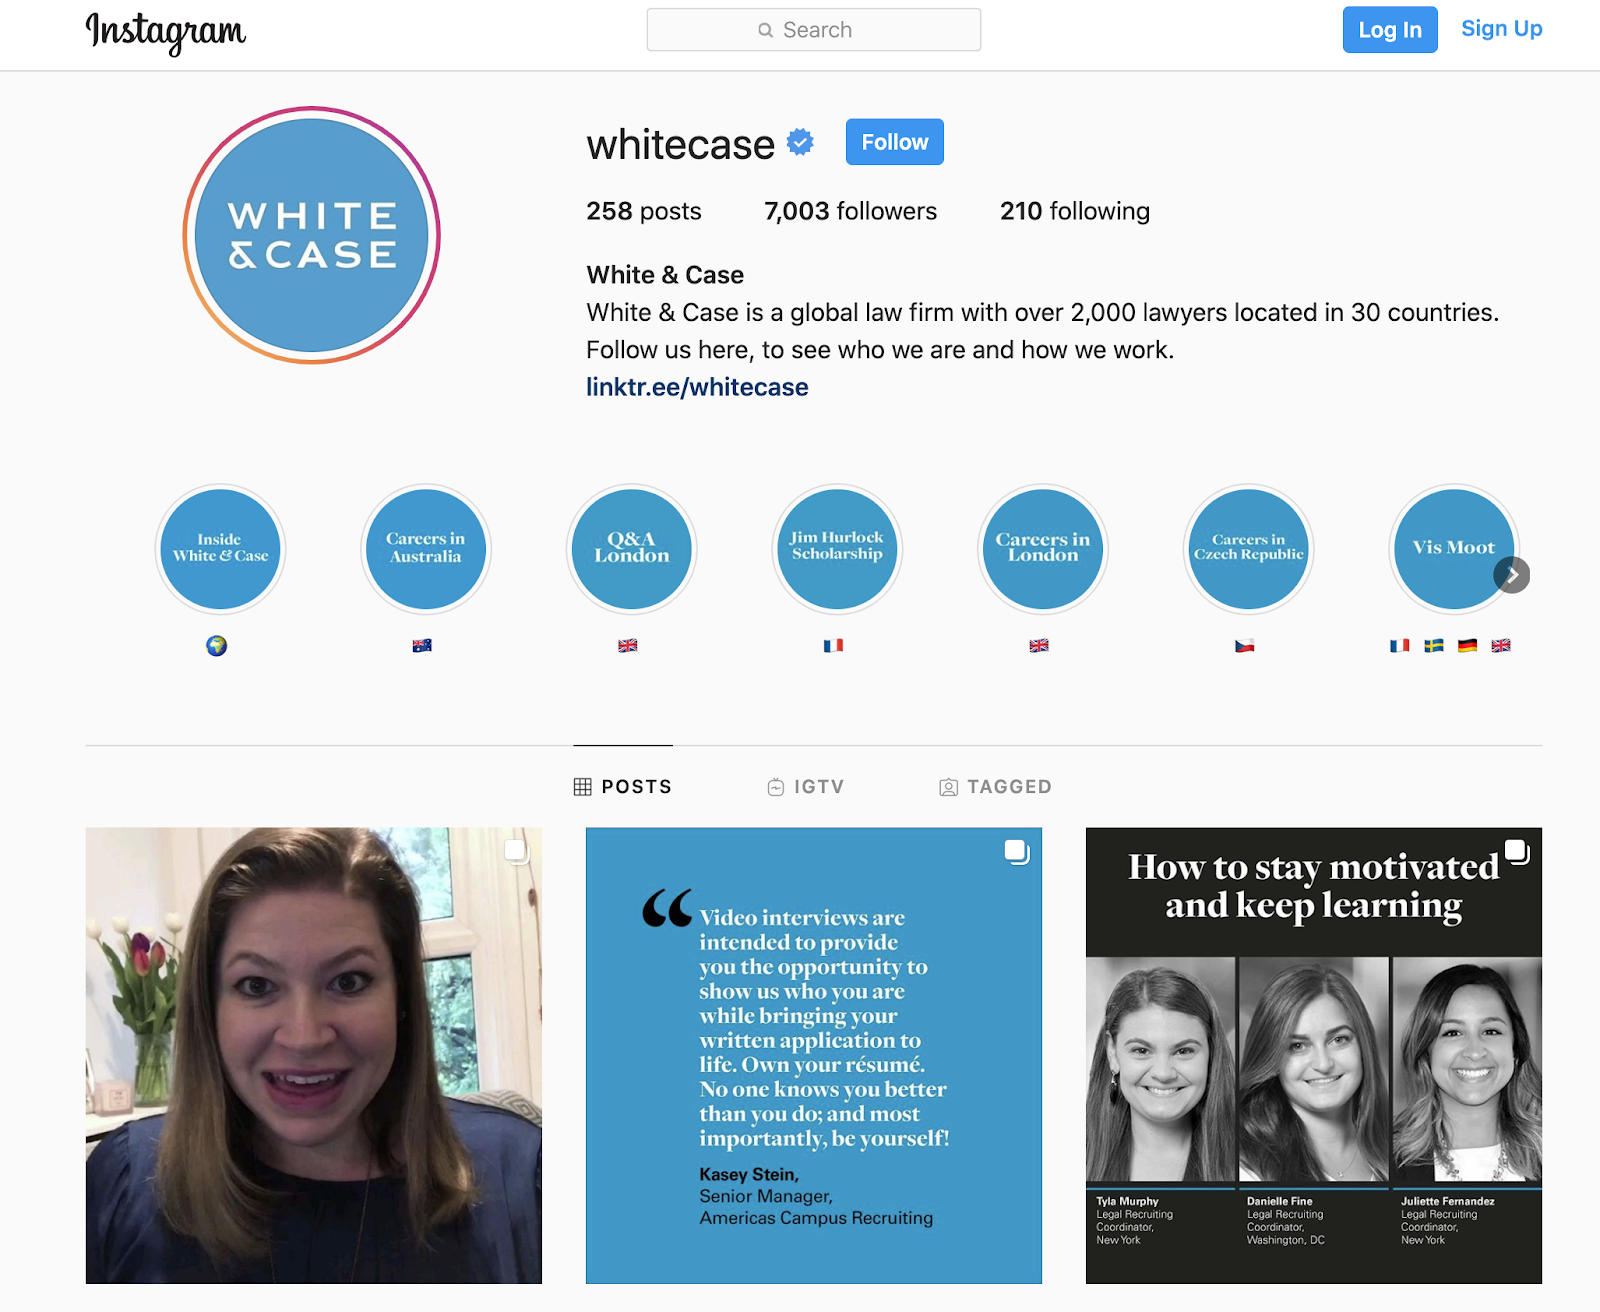 White & Case Instagram Account